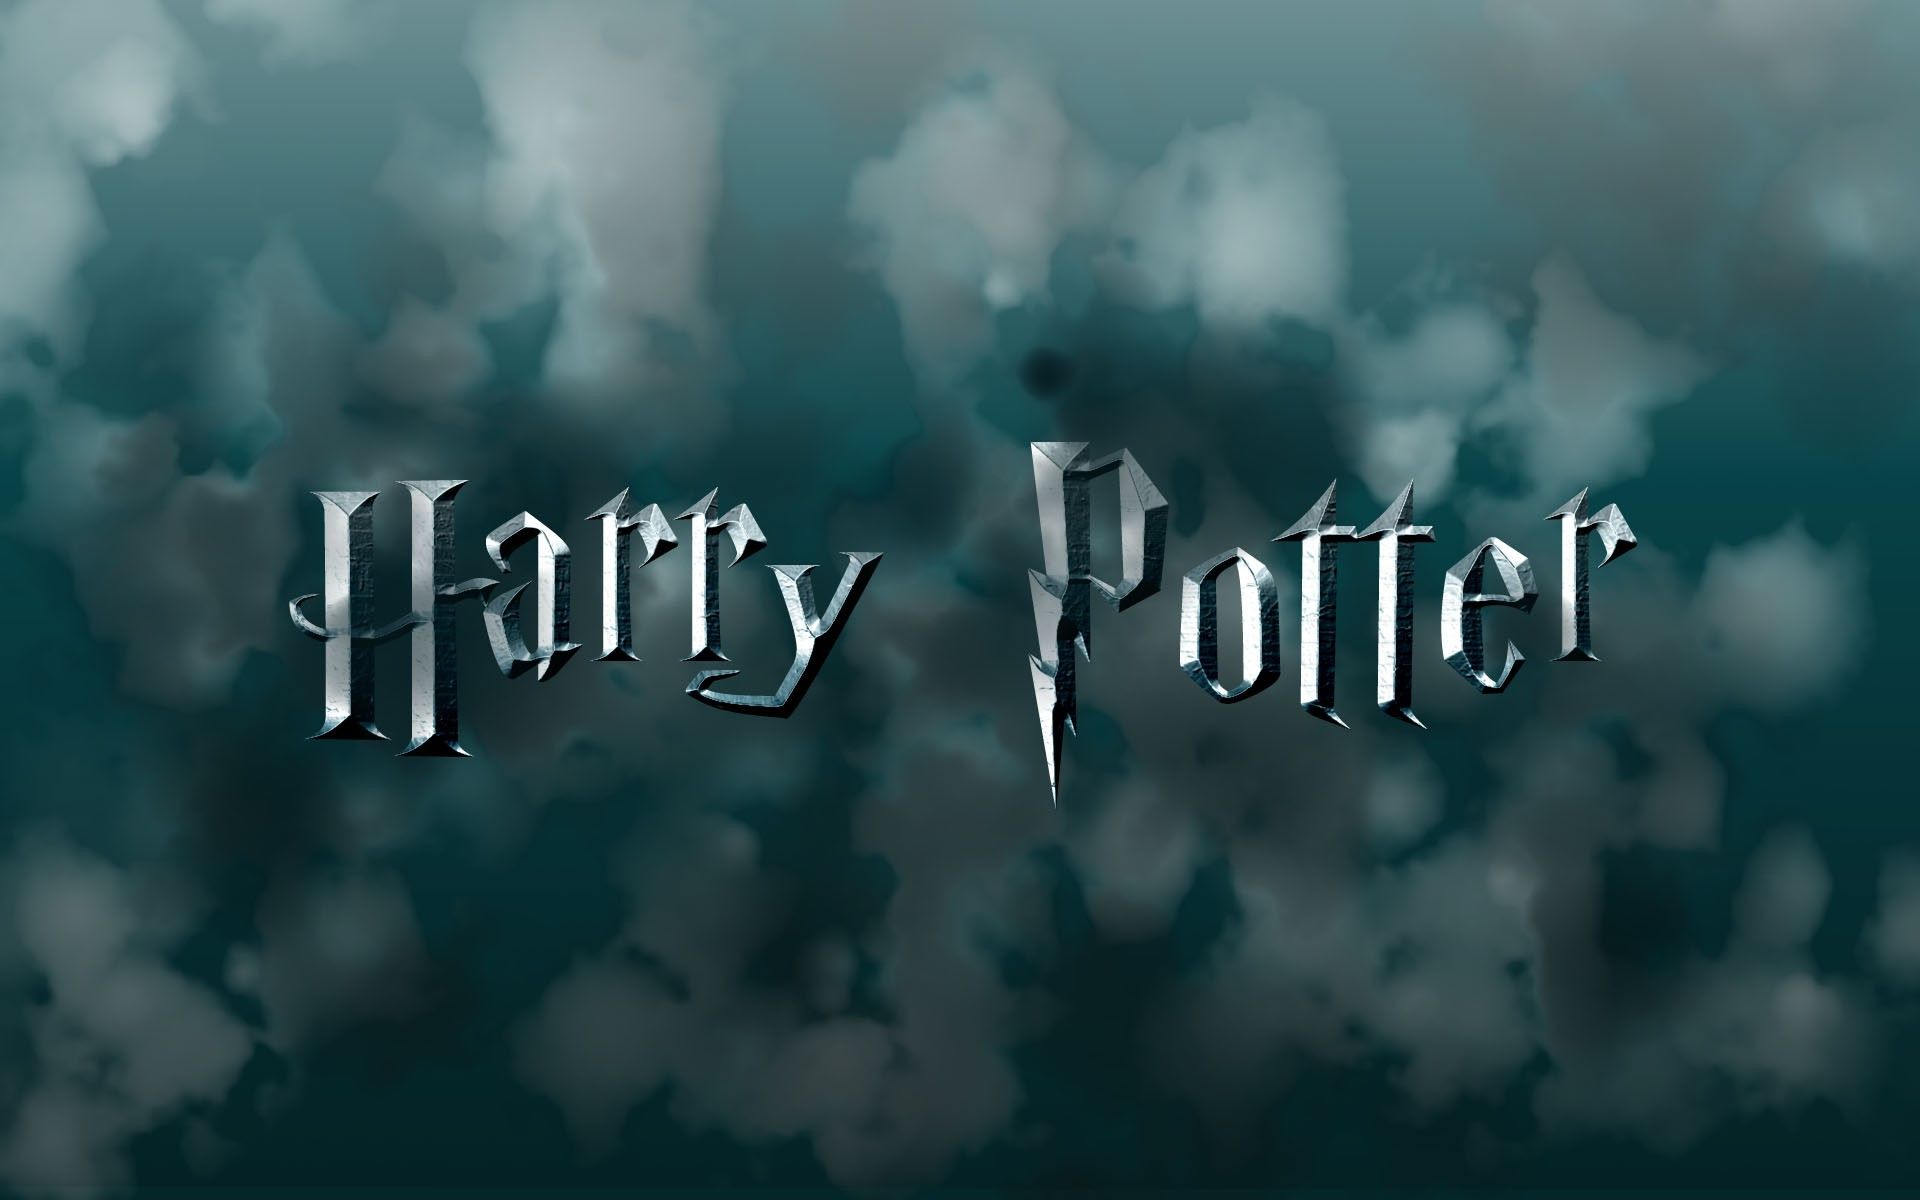 Sự kiện sắp tới của bạn đang cần một hình nền máy tính đẹp để trang trí? Hãy sử dụng hình nền Harry Potter đẹp mắt này! Với các nhân vật yêu thích trong câu chuyện phù thủy nổi tiếng, bạn sẽ cảm nhận được sự kì diệu và phép thuật trong không gian làm việc của mình.